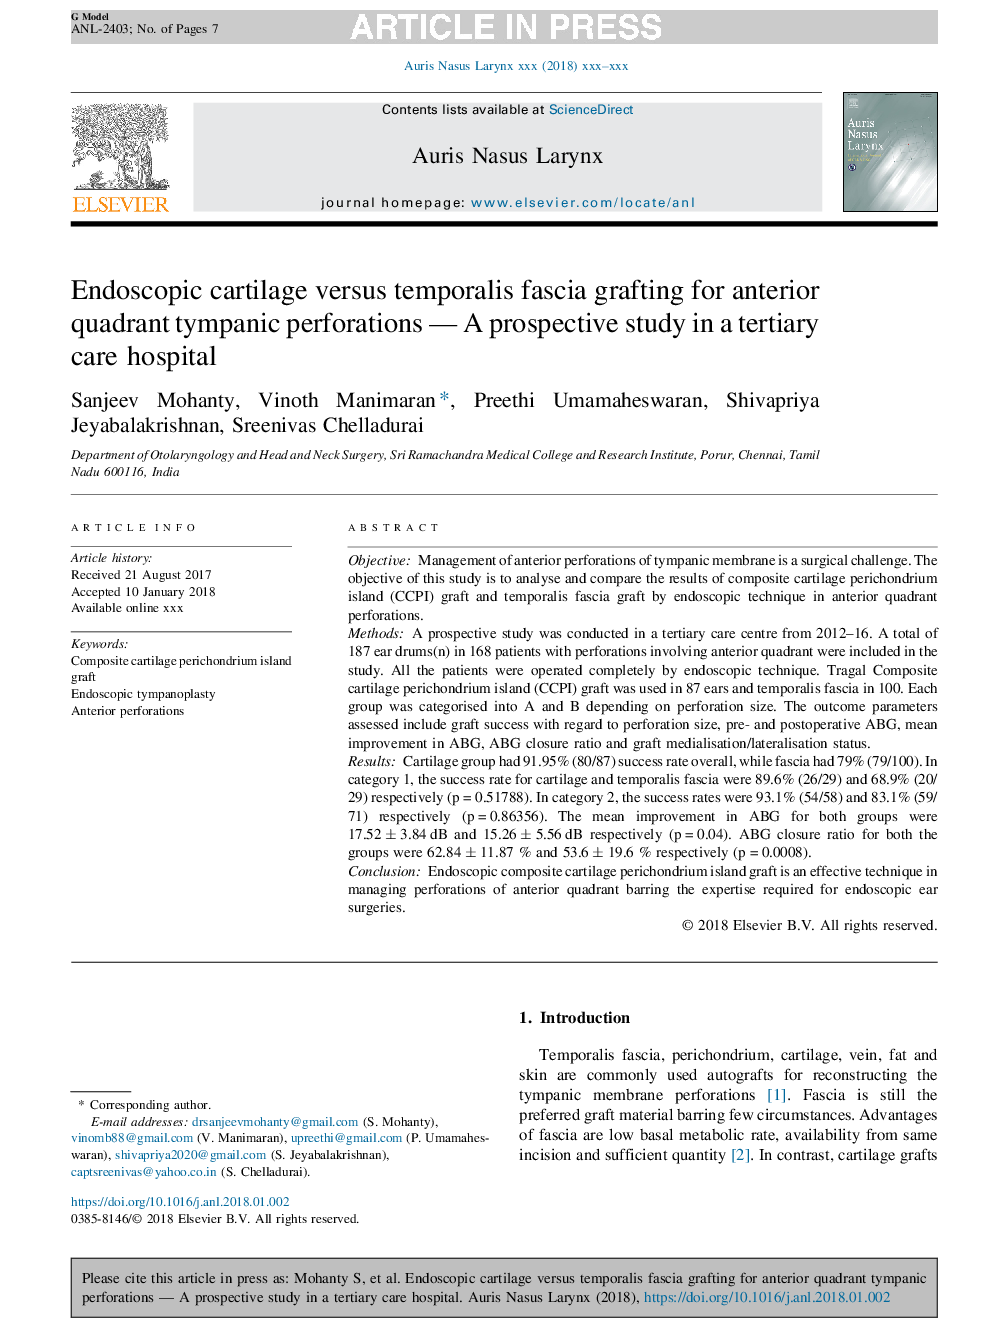 غضروف اندوسکوپیک در مقابل فورسیستم فورا مونوپلاستی برای سوراخهای سوراخ دار تریپانک قدامی - مطالعه آینده نگر در بیمارستان مراقبت های ویژه 